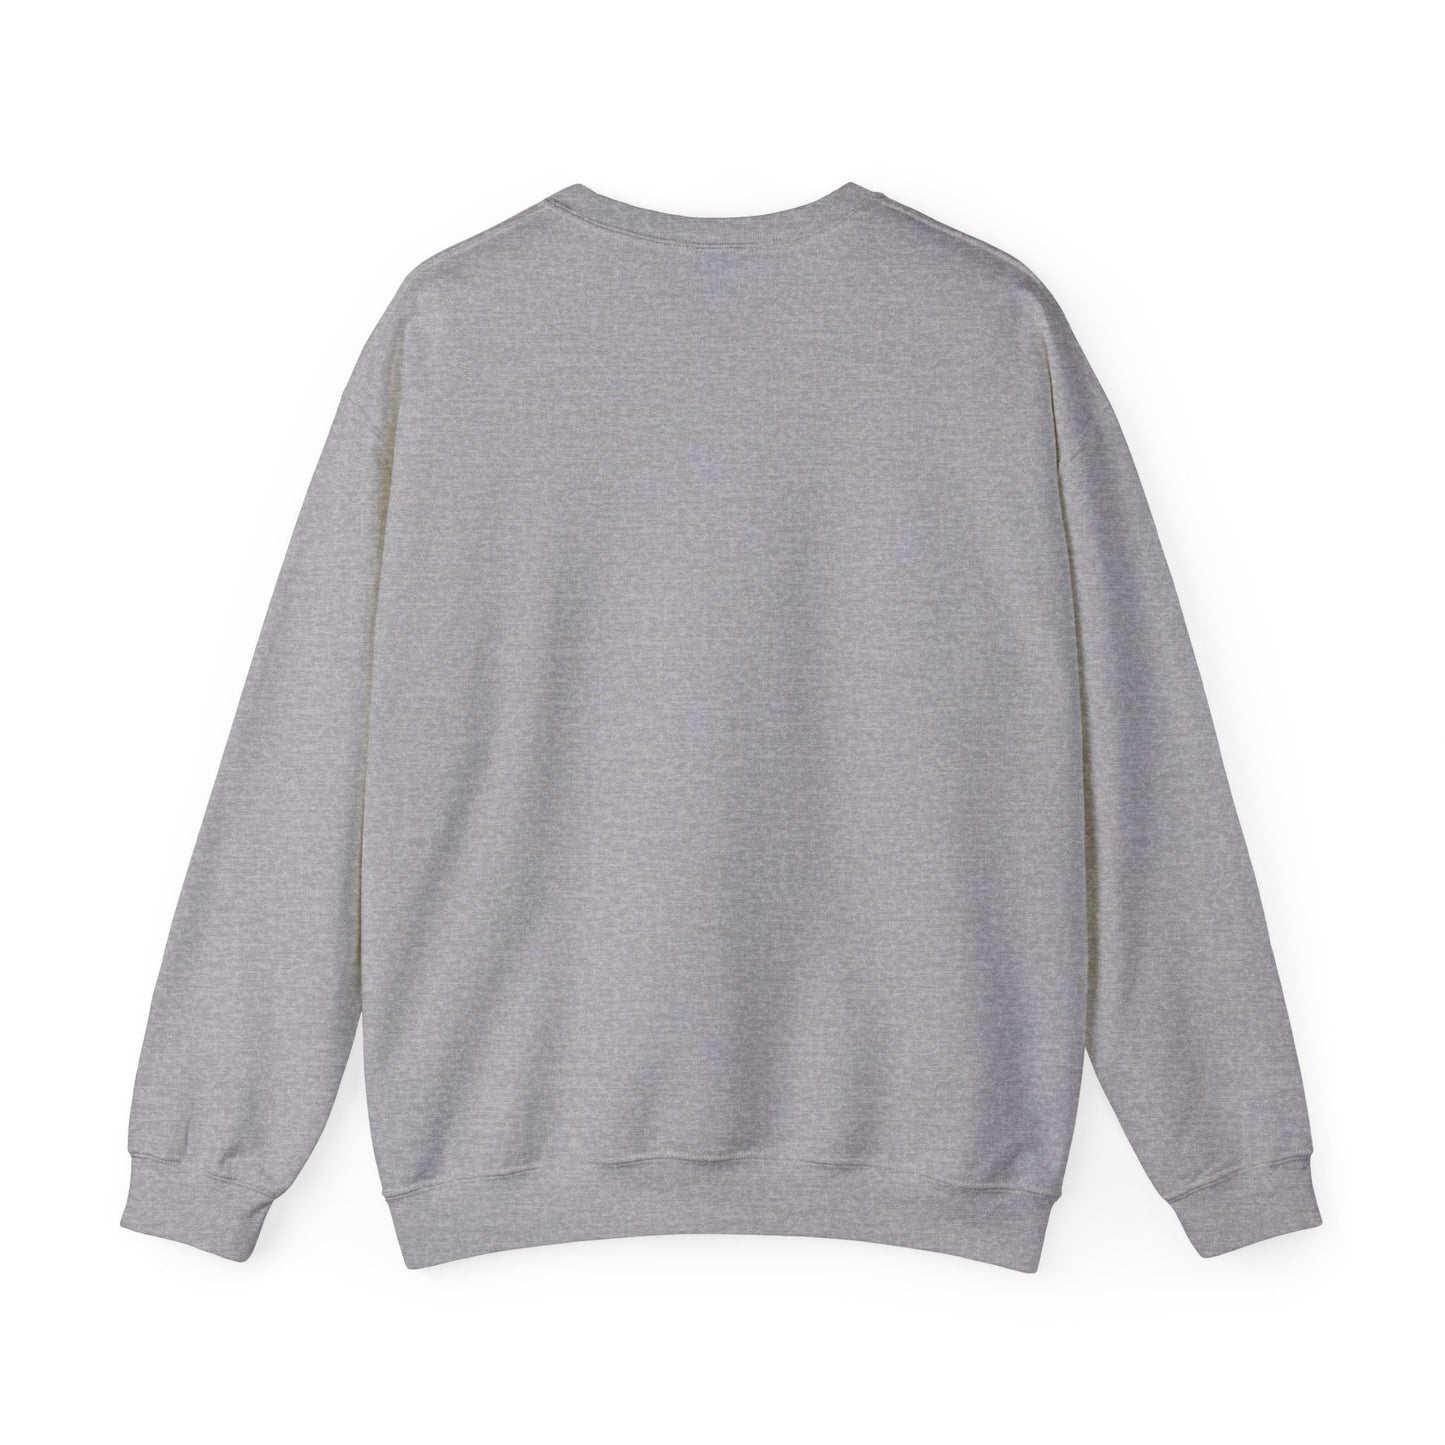 Sweatshirt:  In My Quilting Era Crewneck Sweatshirt